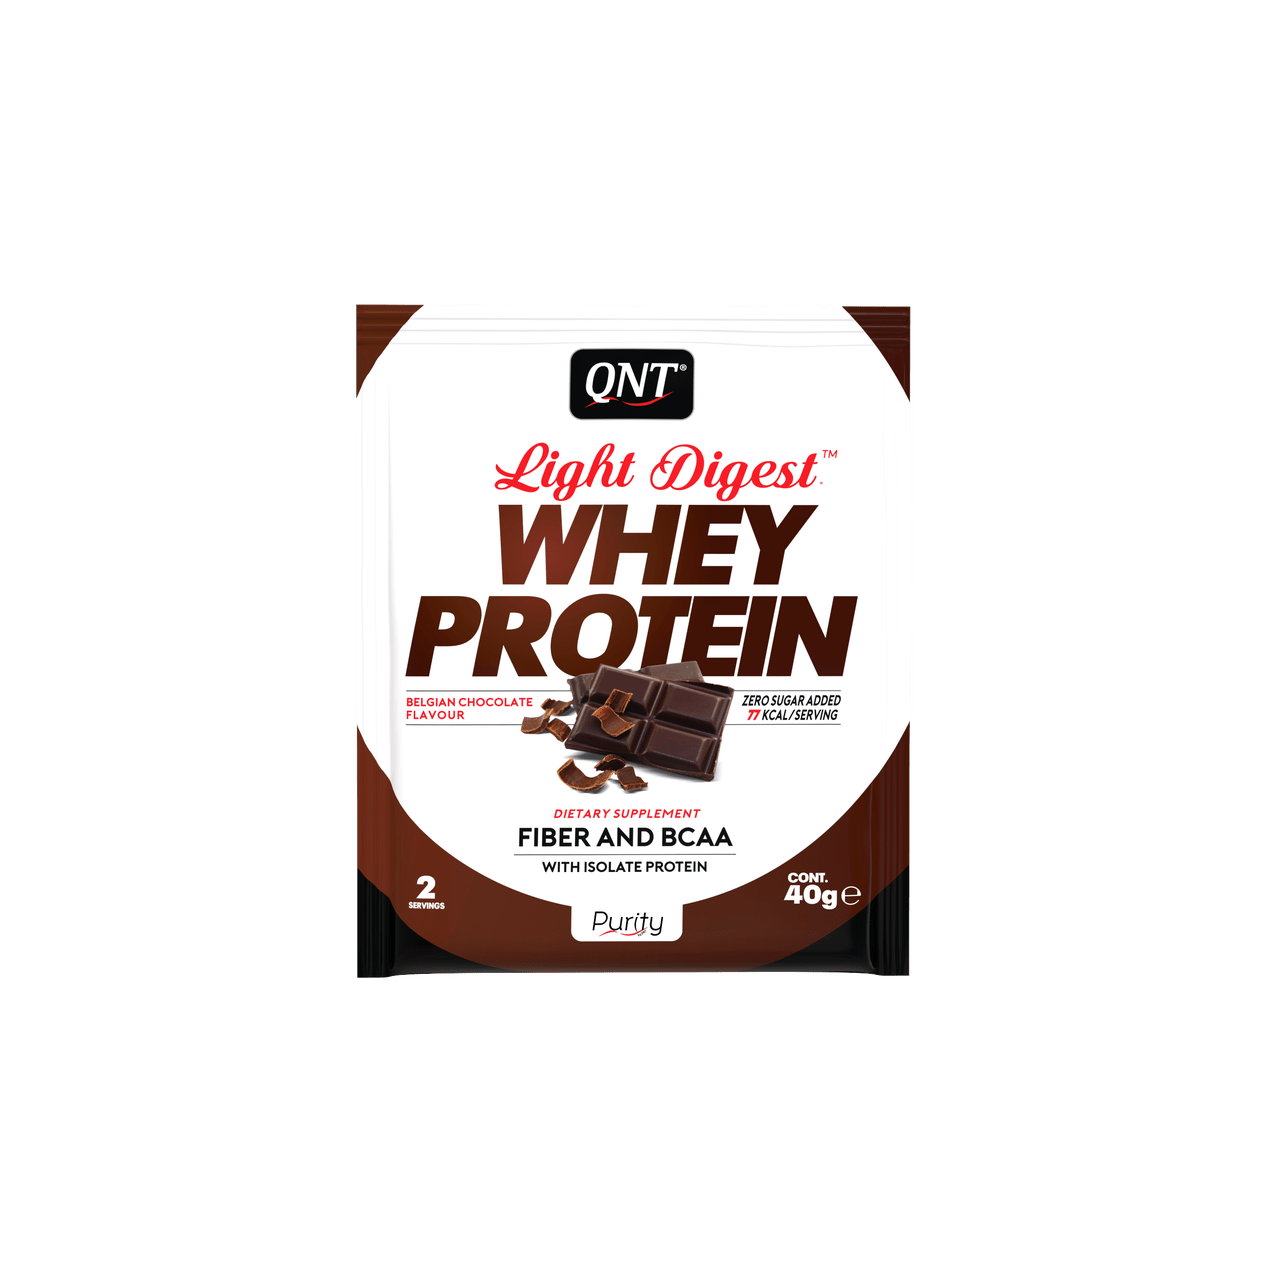 Сывороточный протеин концентрат QNT Light Digest Whey protein (500 г) кюнт belgian chocolate,  мл, QNT. Сывороточный концентрат. Набор массы Восстановление Антикатаболические свойства 